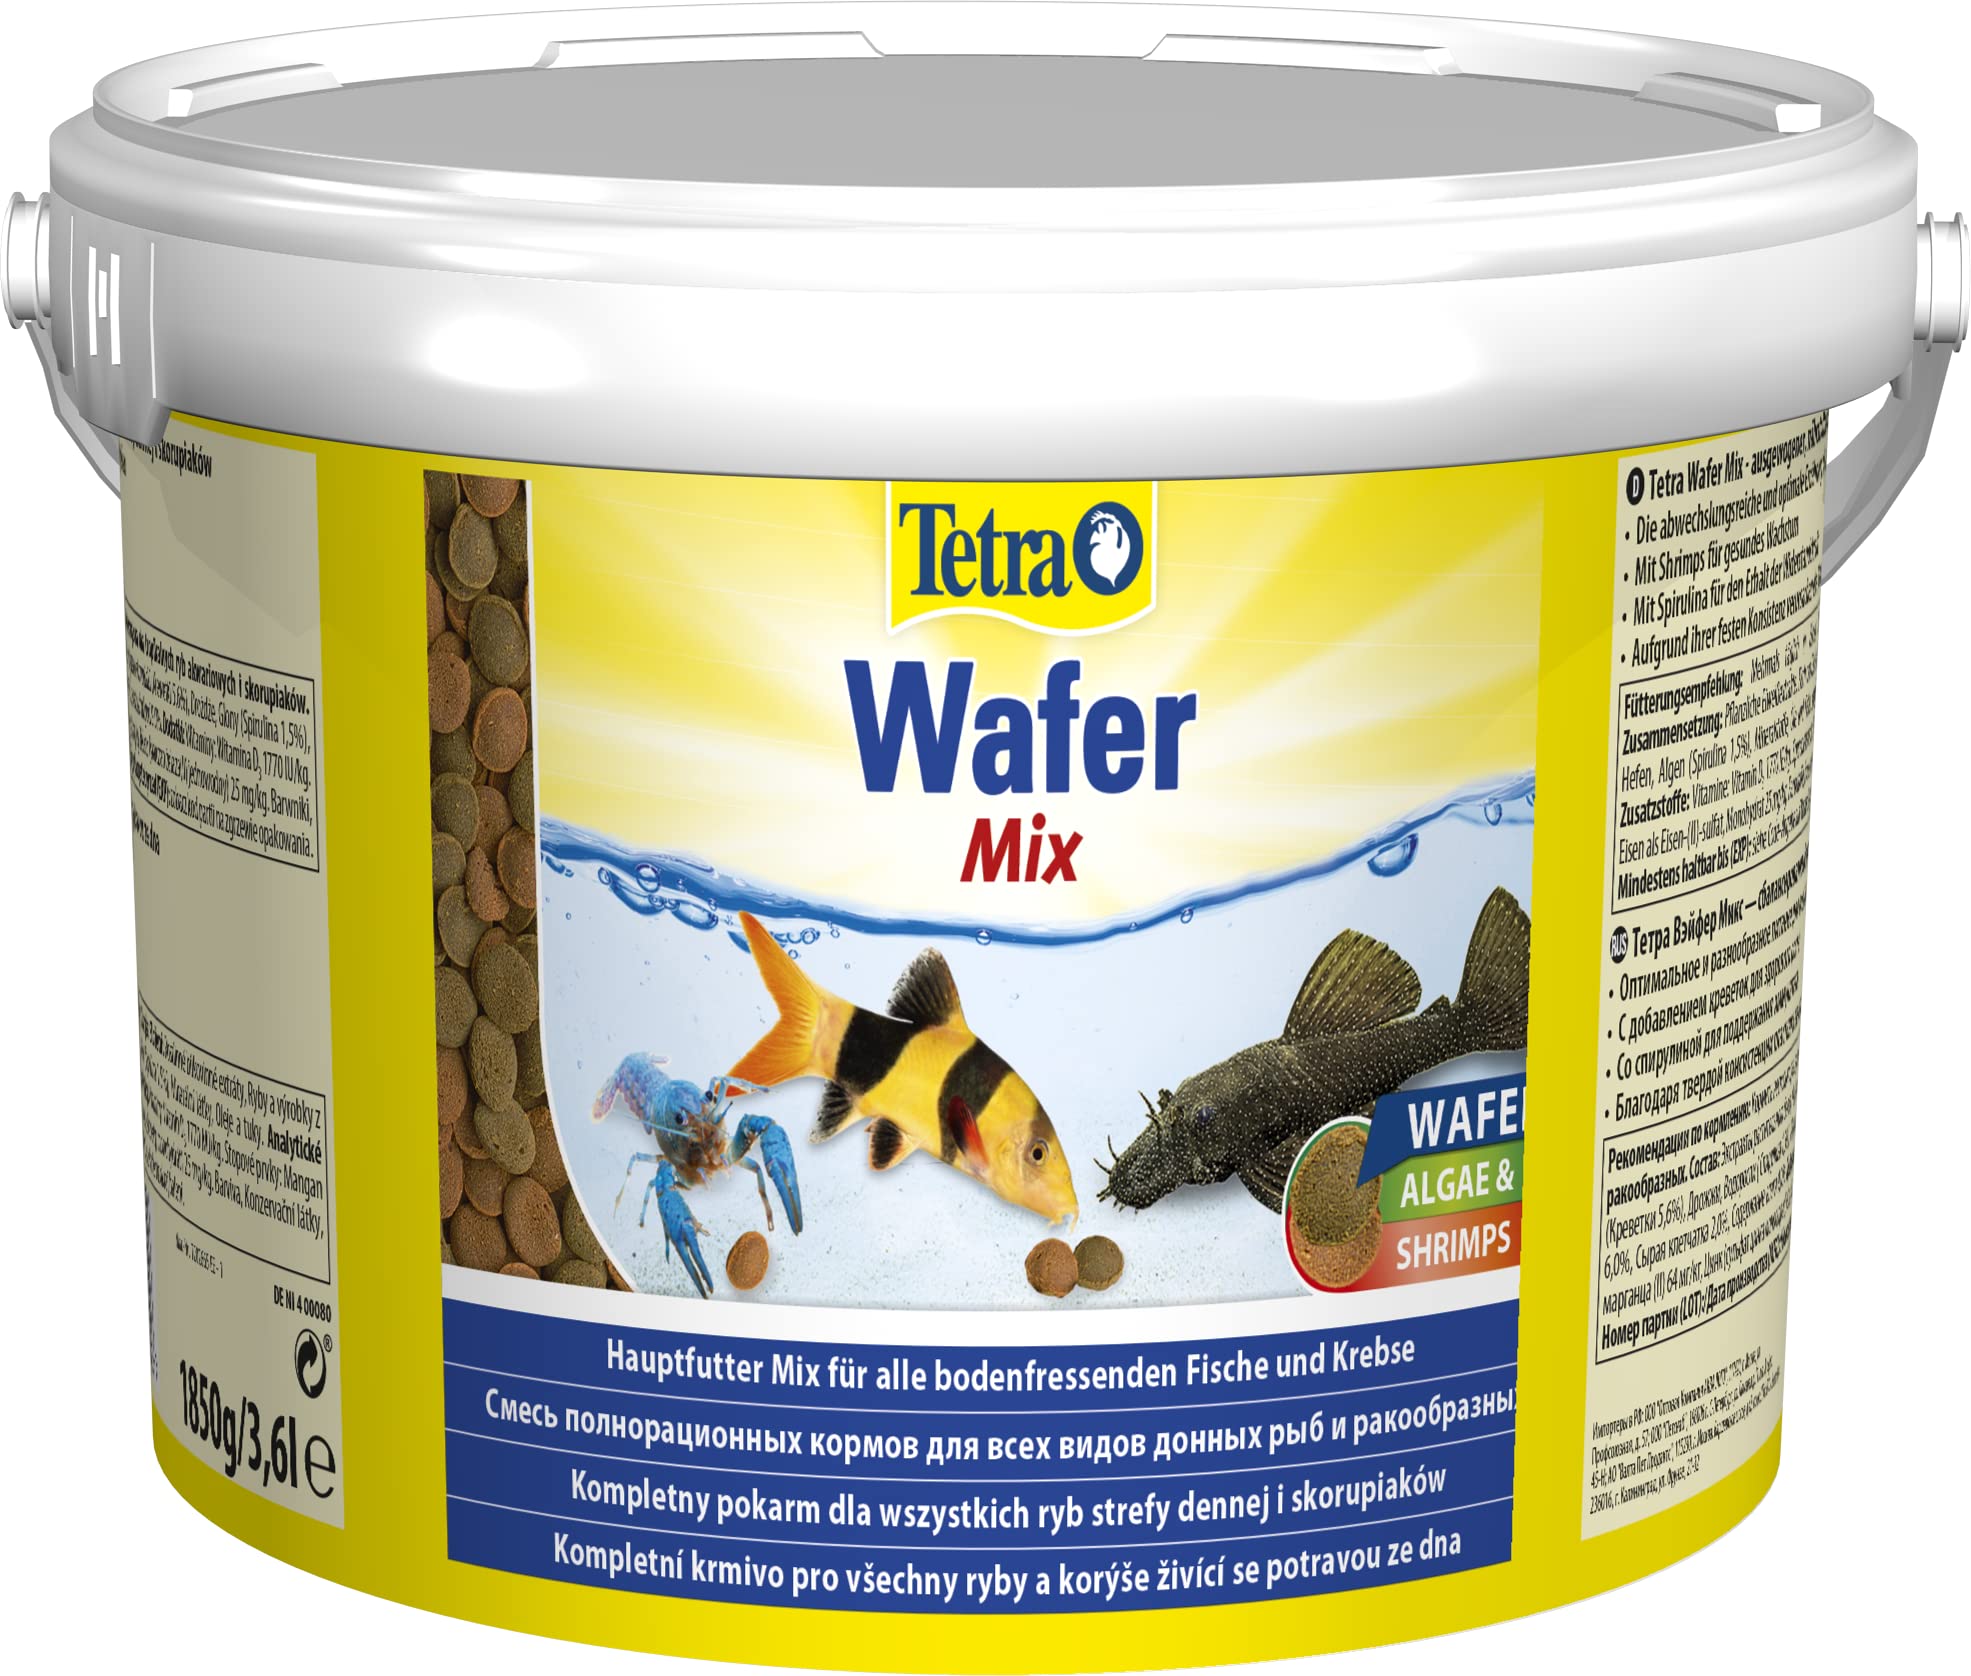 Tetra Wafer Mix - Fischfutter für alle Bodenfische (z.B. Welse) und Krebse, für gesundes Wachstum und eine bessere Widerstandskraft, 3,6 L